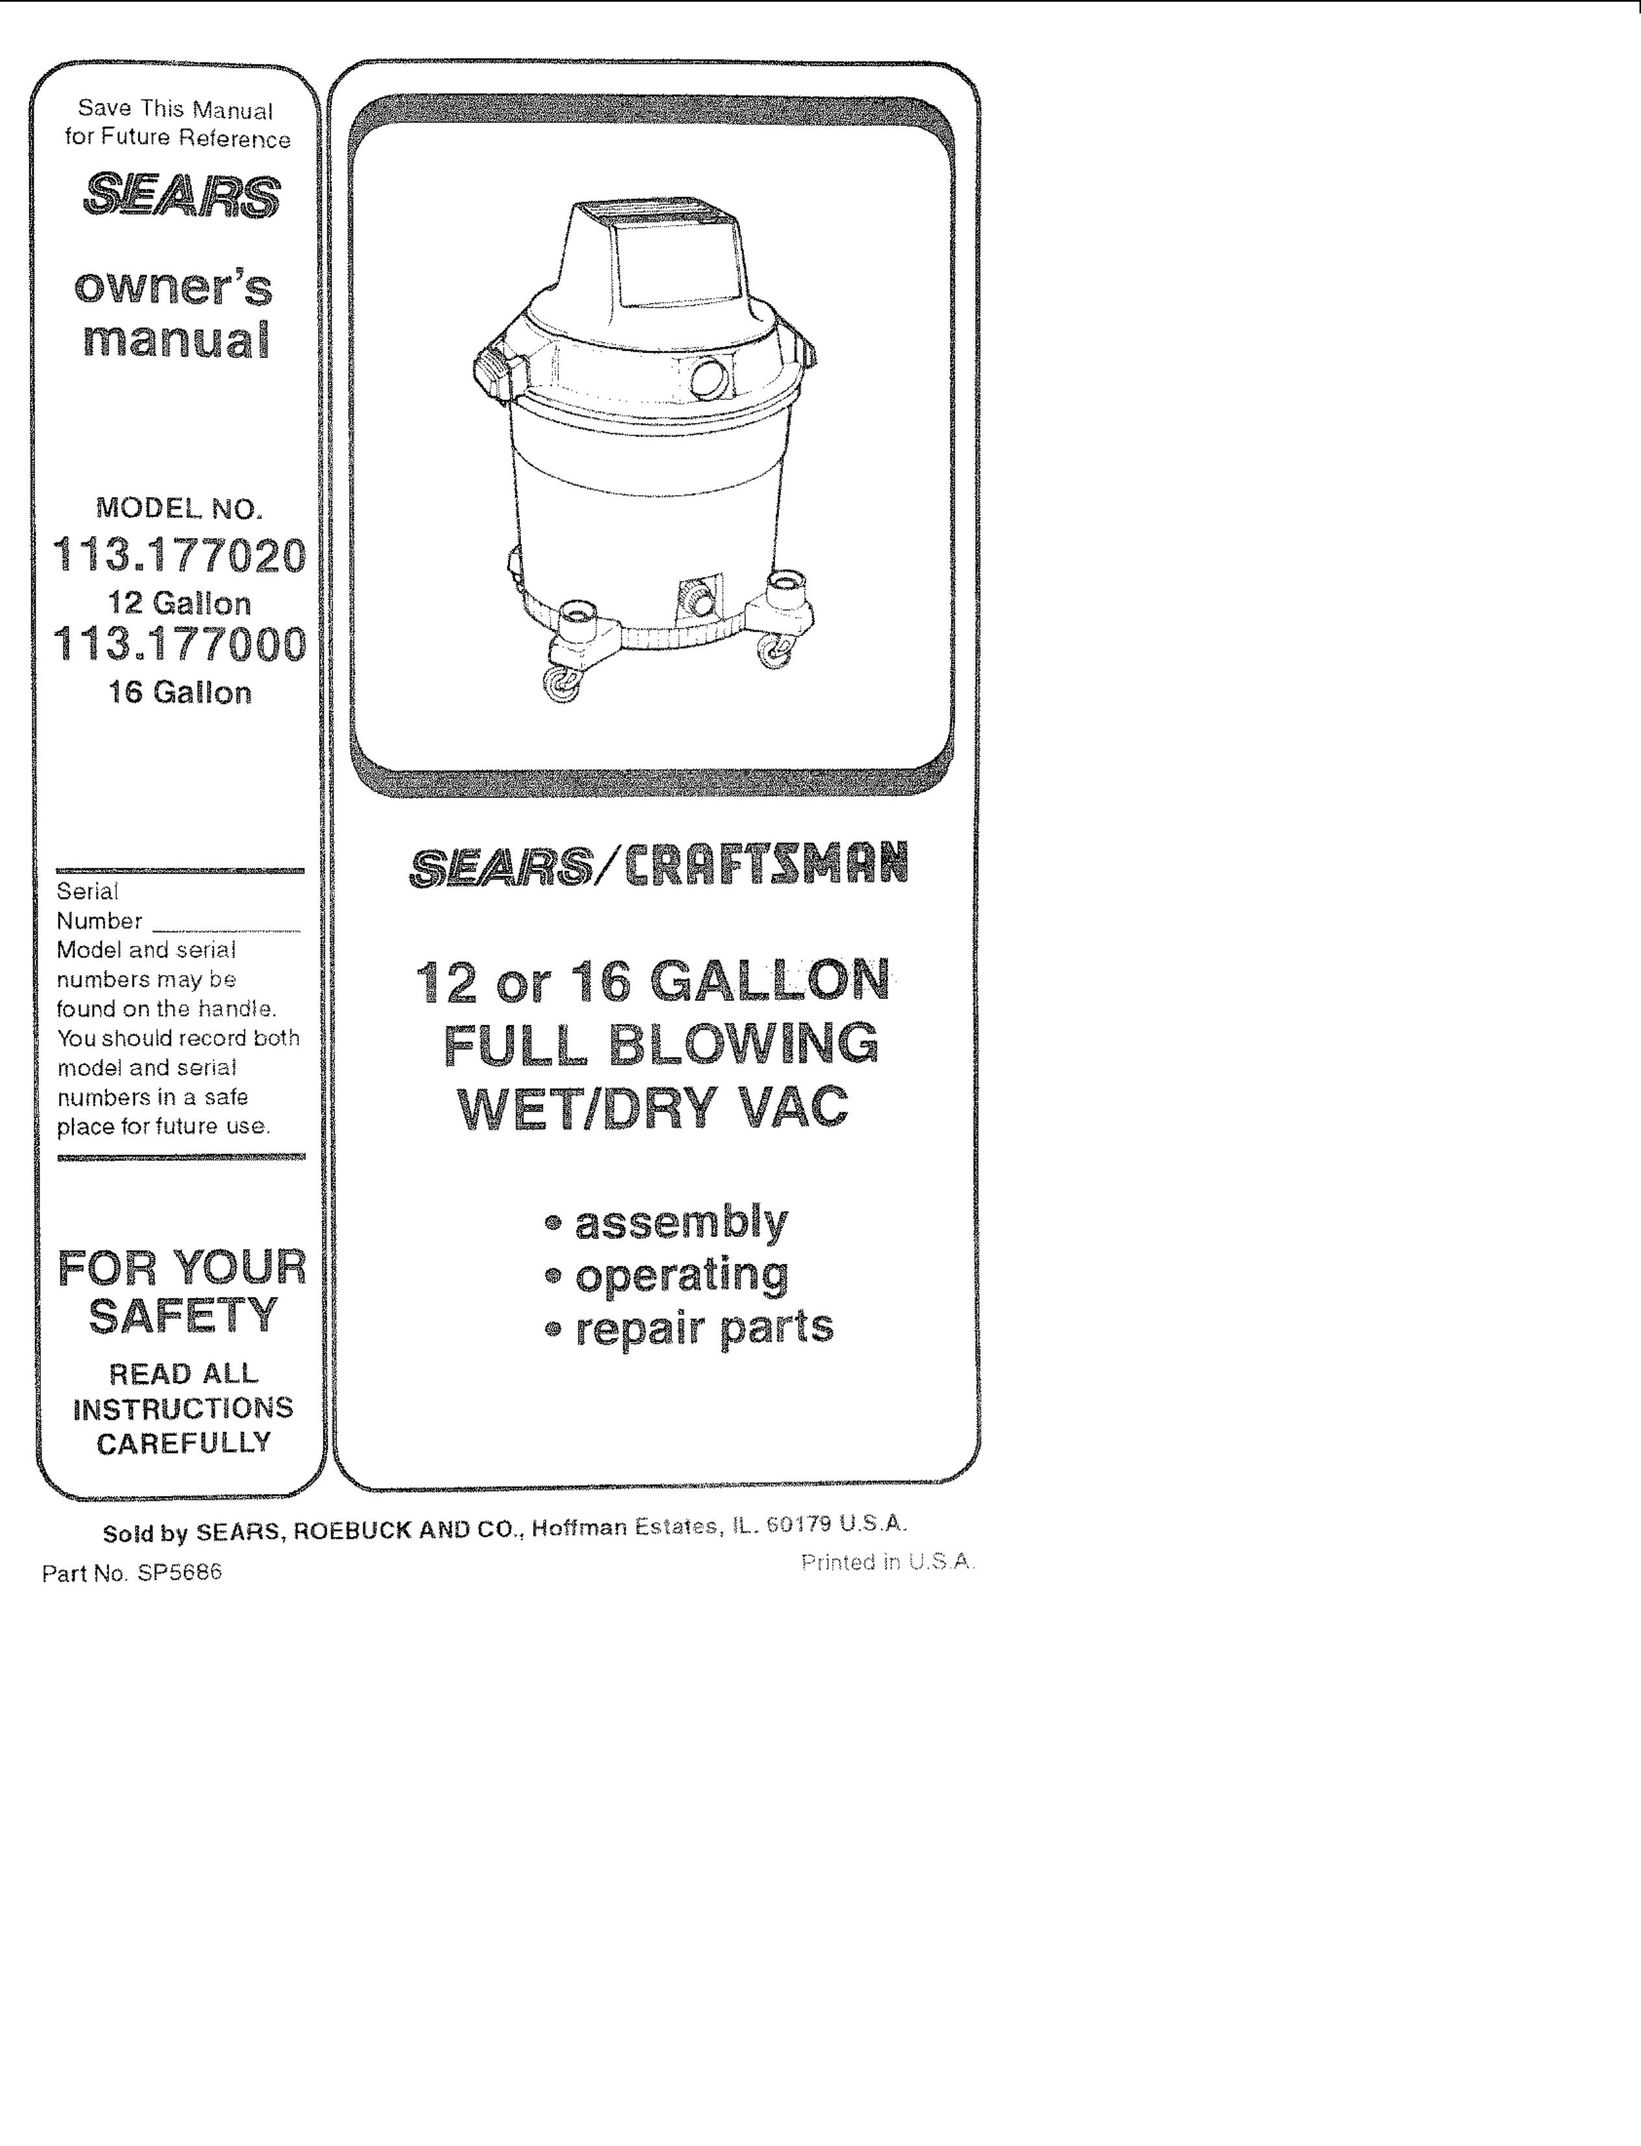 Sears 113.177000 Vacuum Cleaner User Manual